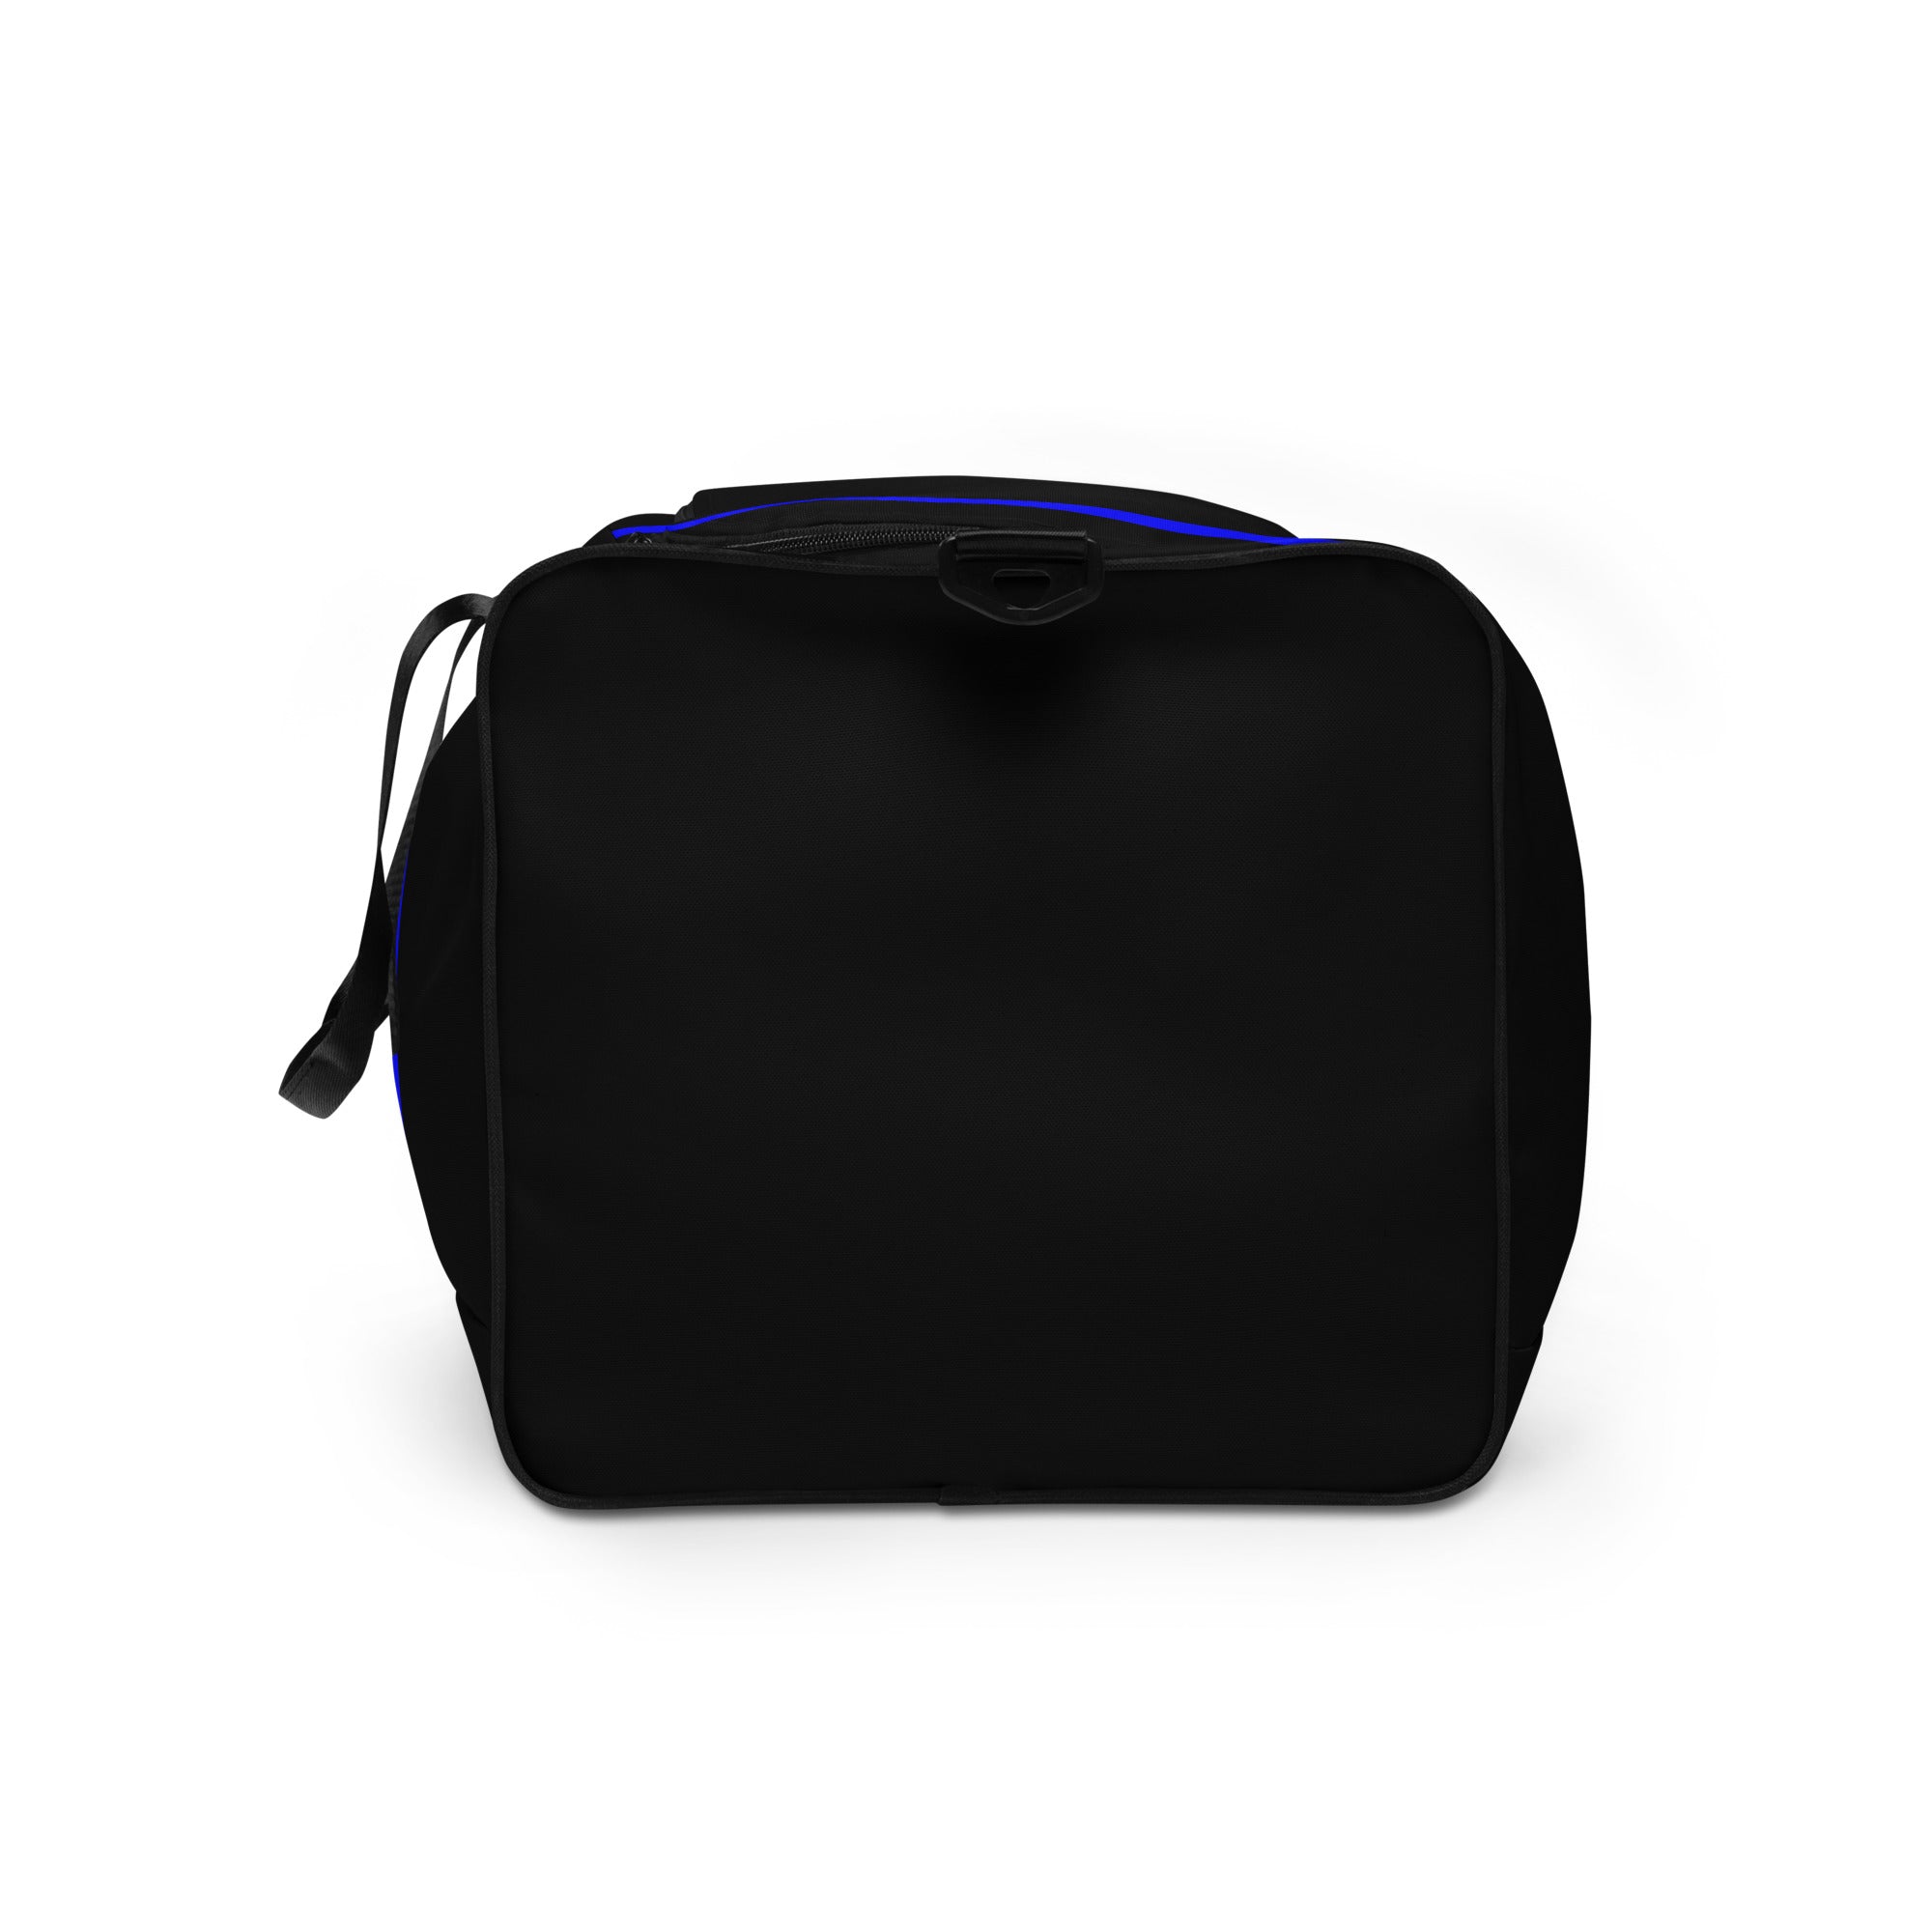 Thin Blue Line Vertical 2X Duffle Bag